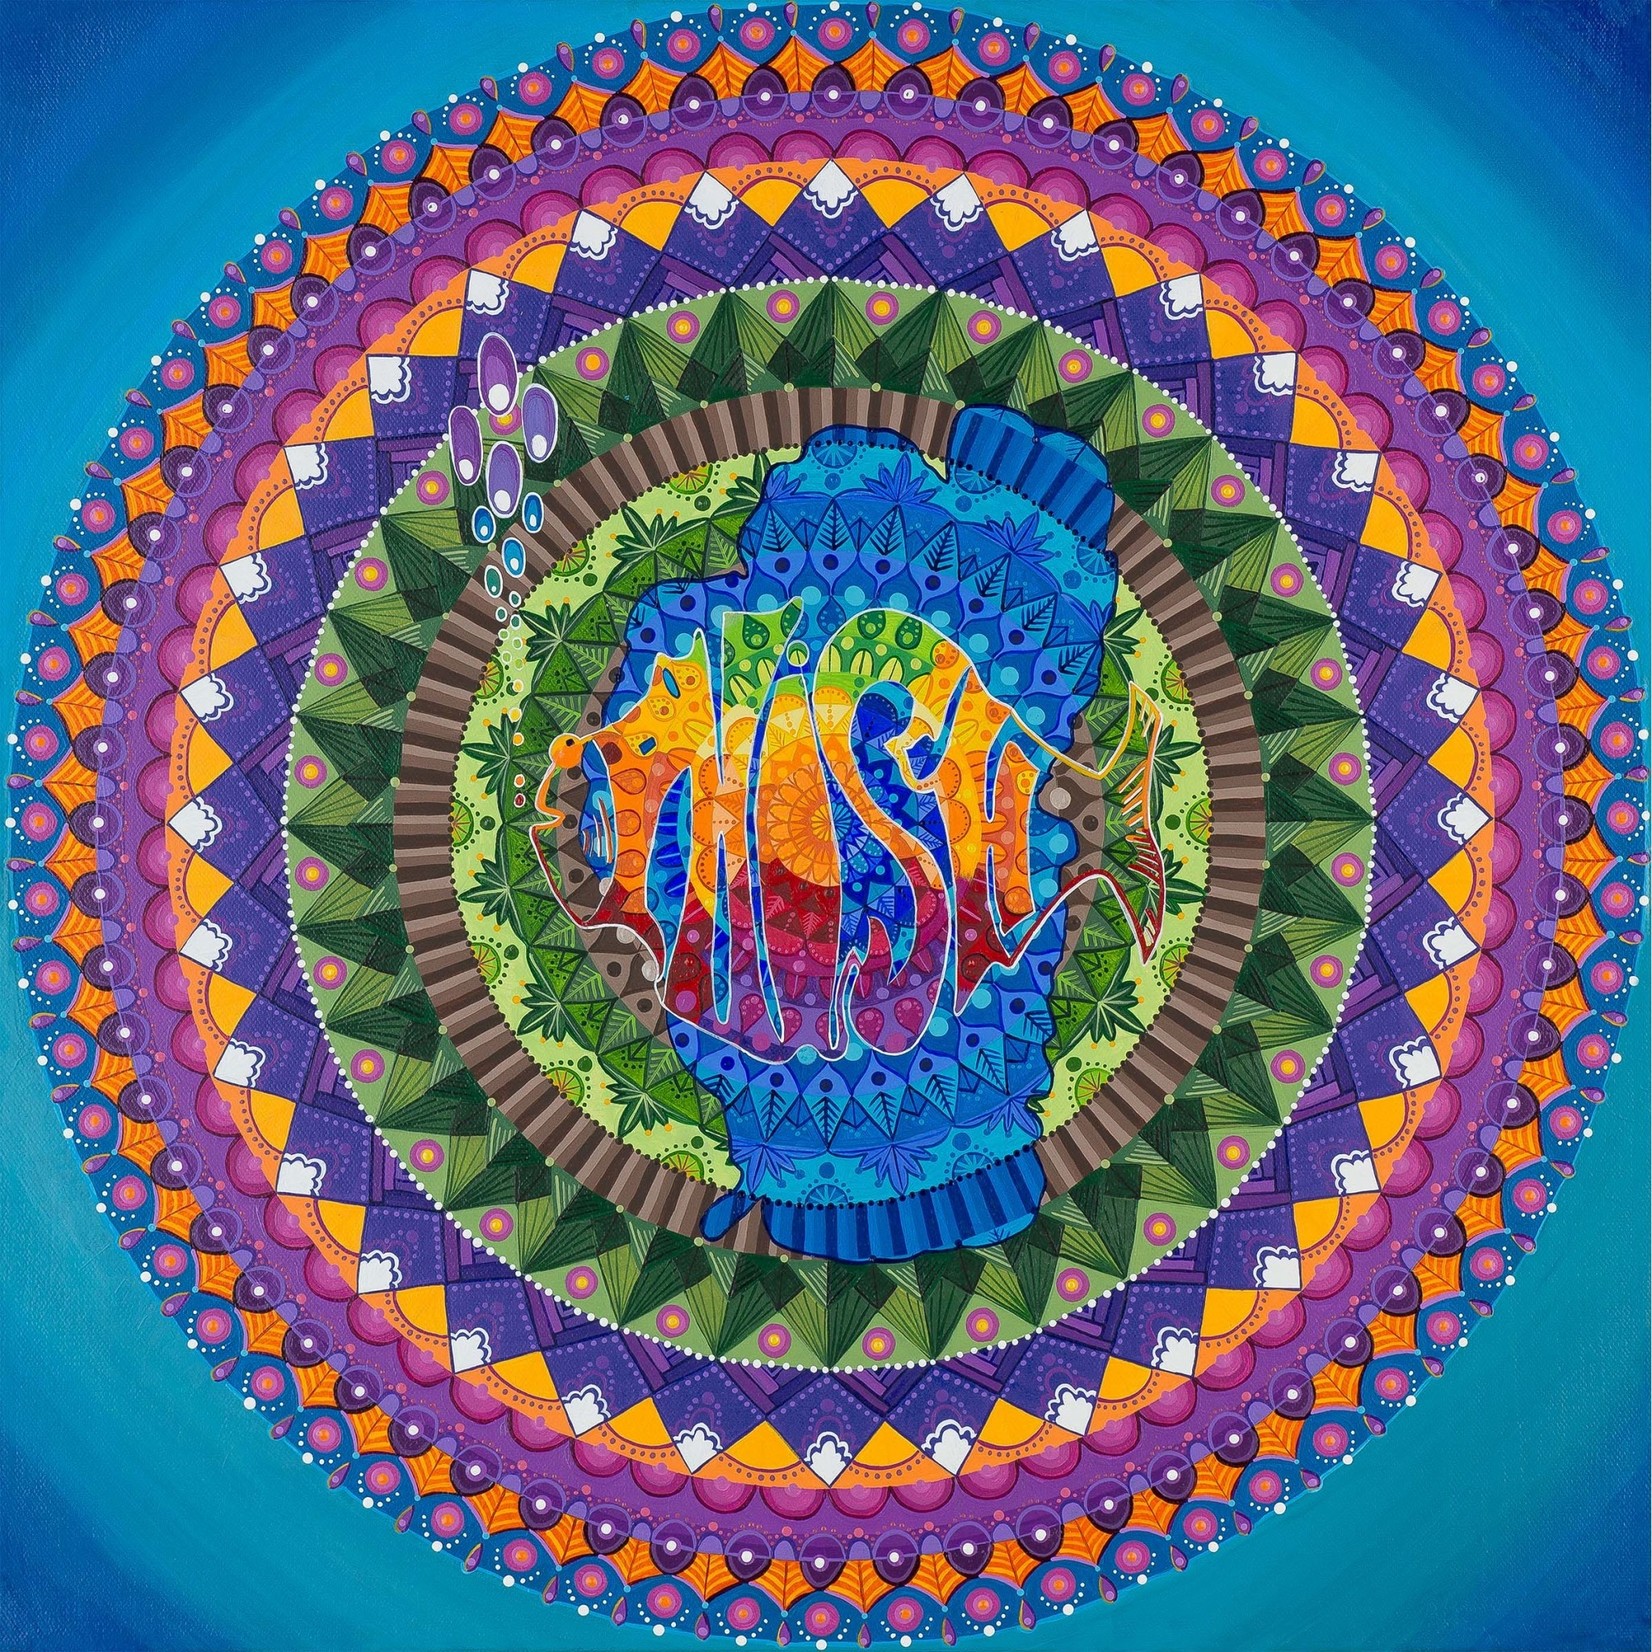 Stirling Studios "Phish Tahoe" Mandala - Canvas Print